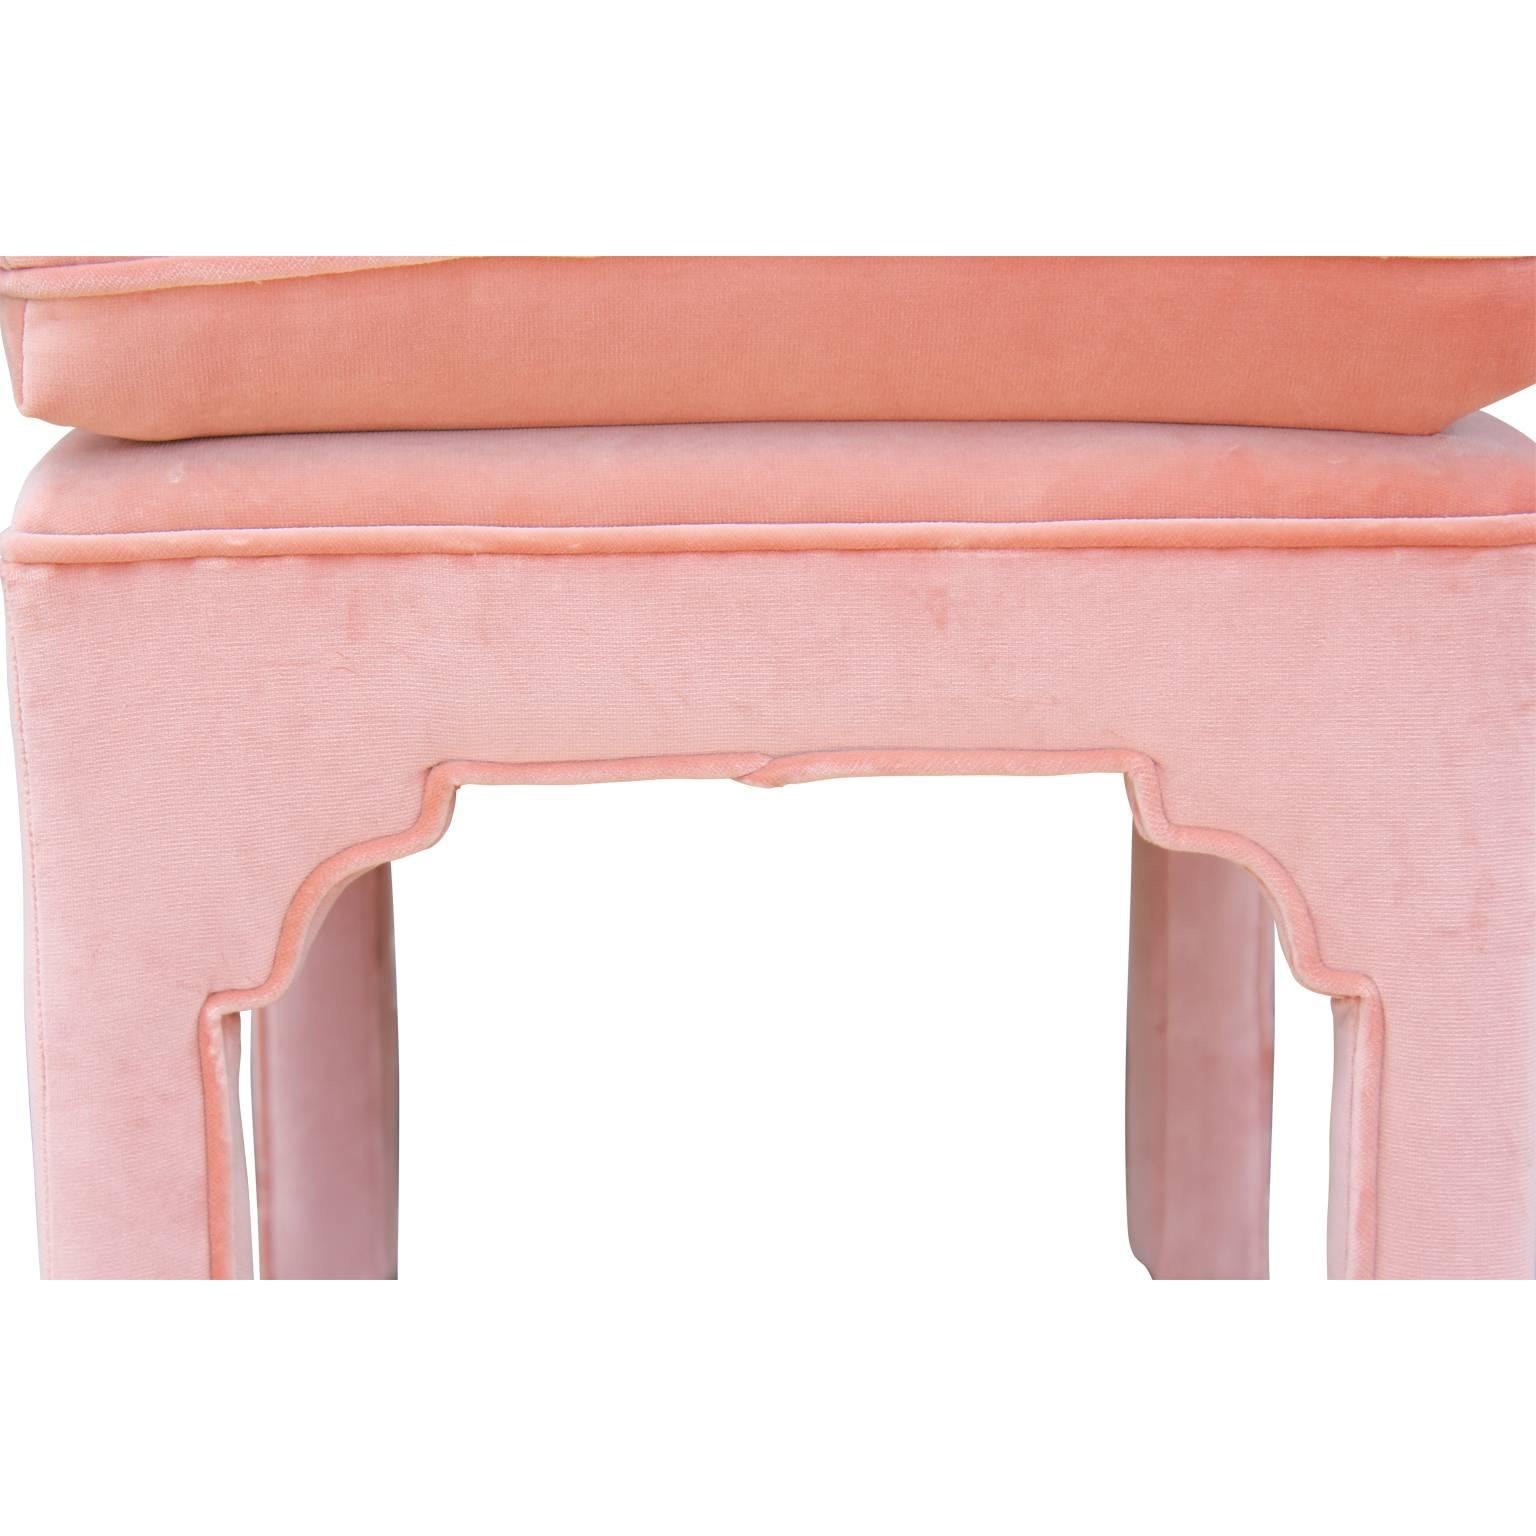 American Pair of Modern Fully Upholstered Light Pink Velvet Footstools Ottomans